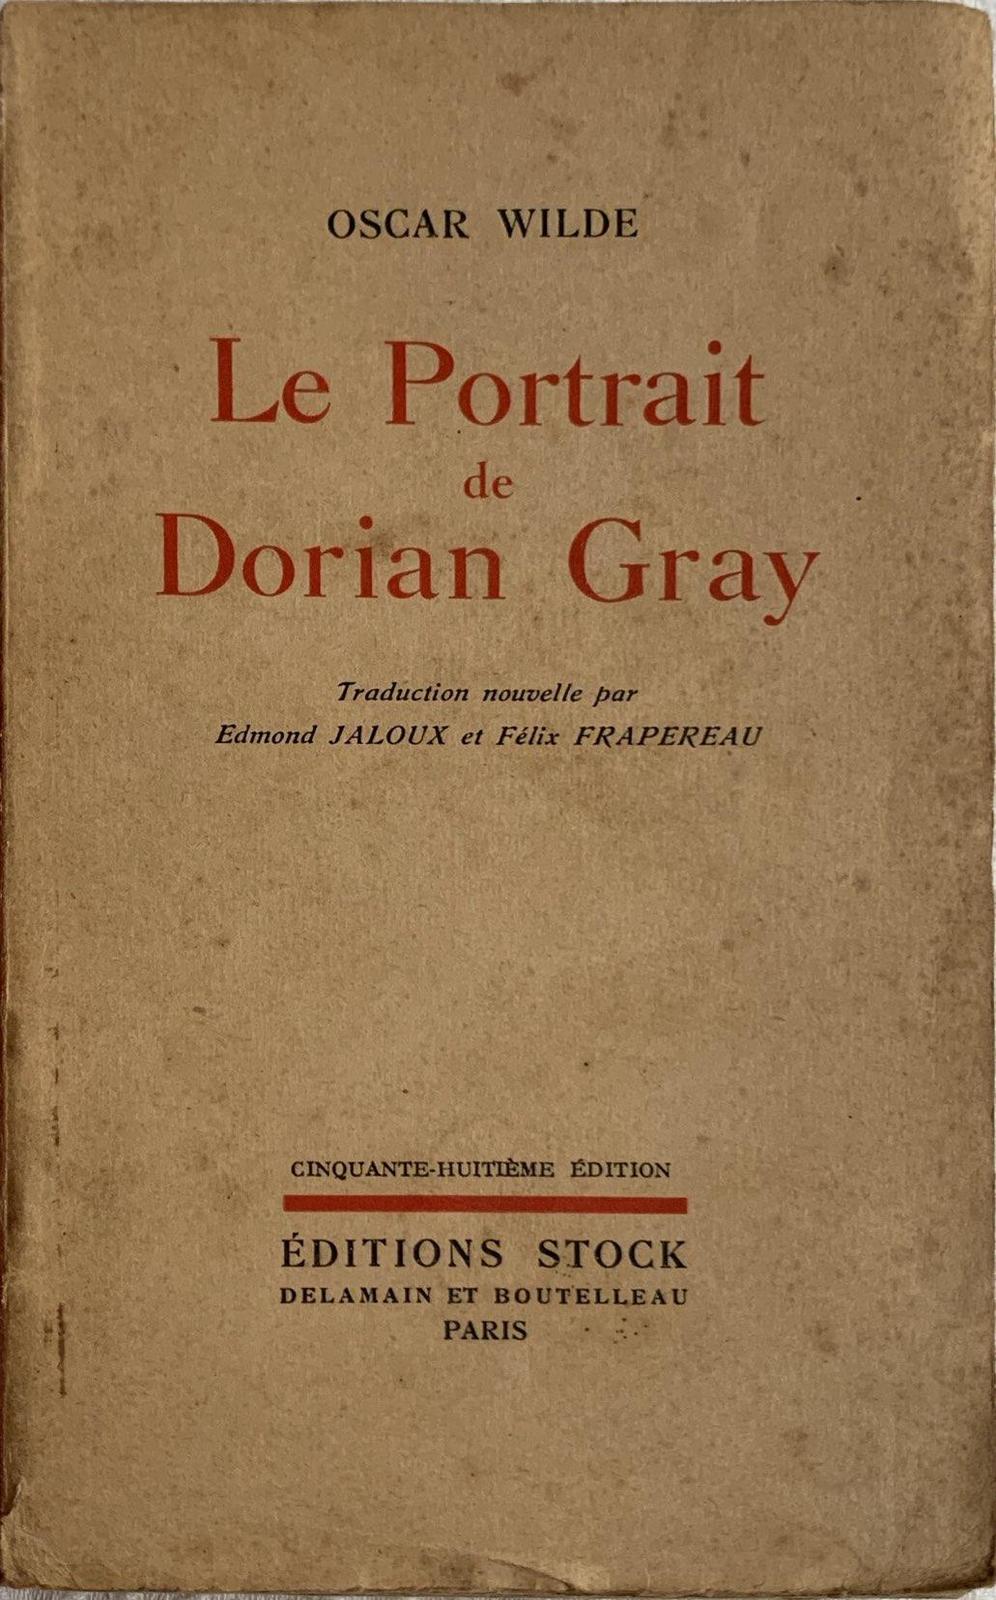 Le Portrait de Dorian Gray (French language, Éditions Stock)